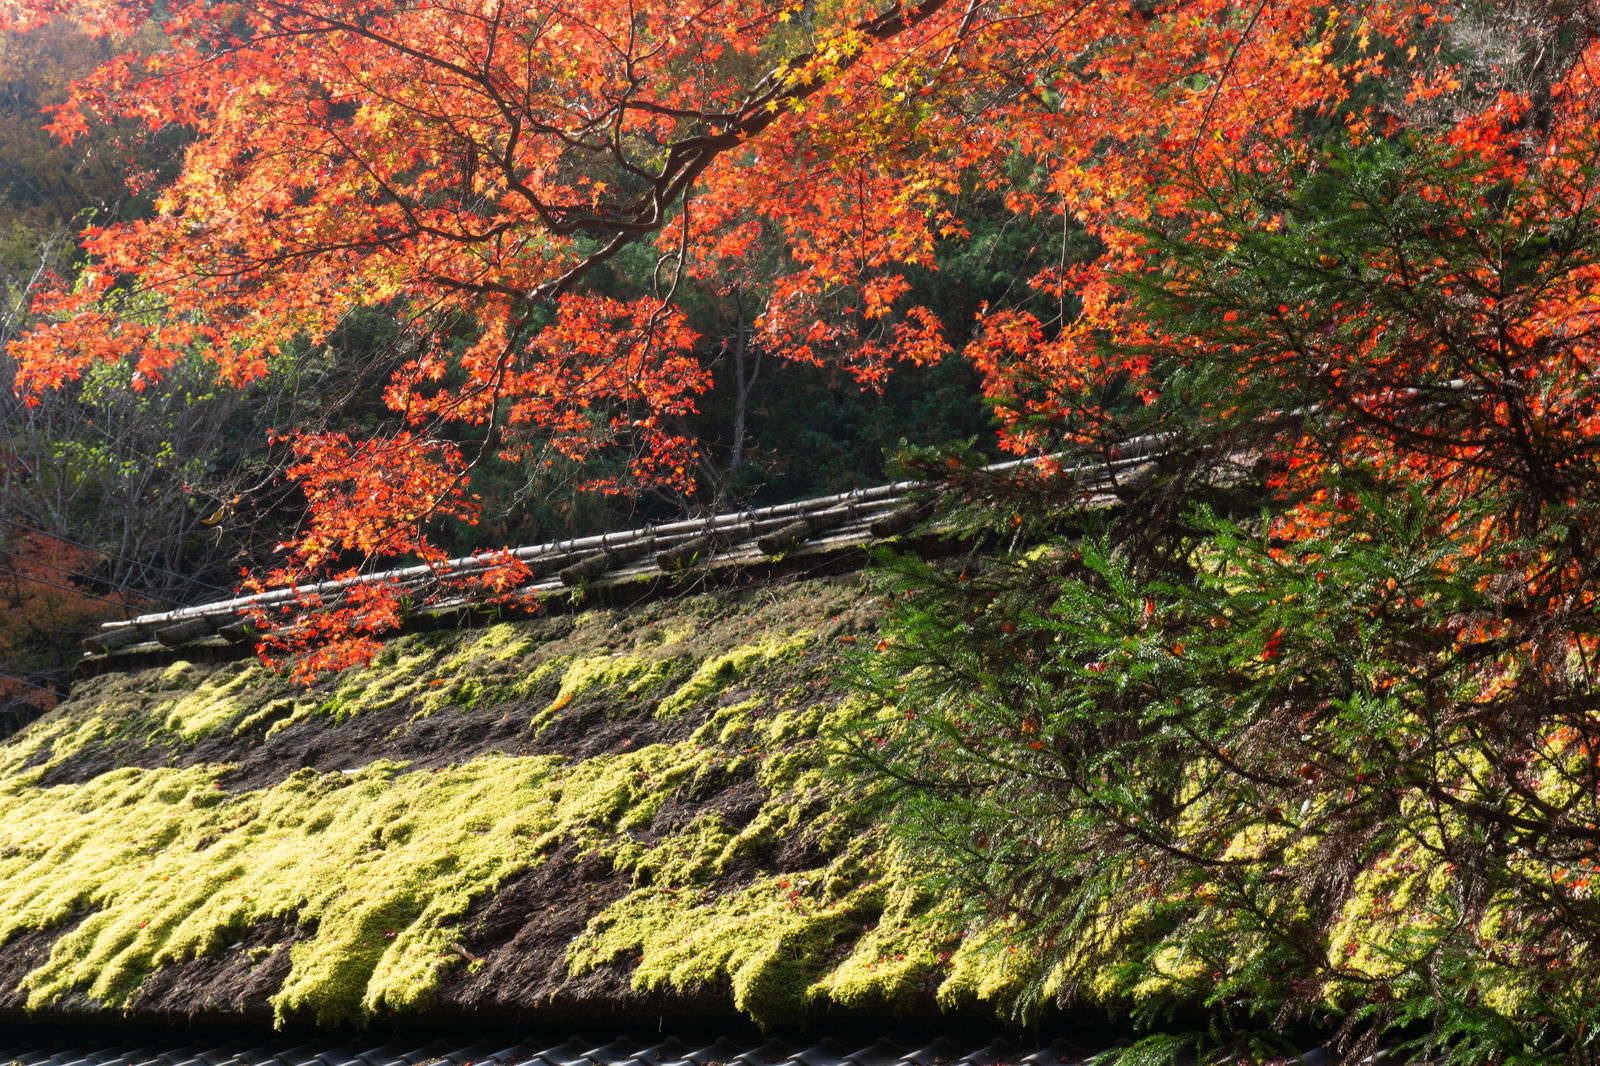 「苔の緑が美しく輝く茅葺屋根に映える紅葉 | フリー素材のぱくたそ」の写真